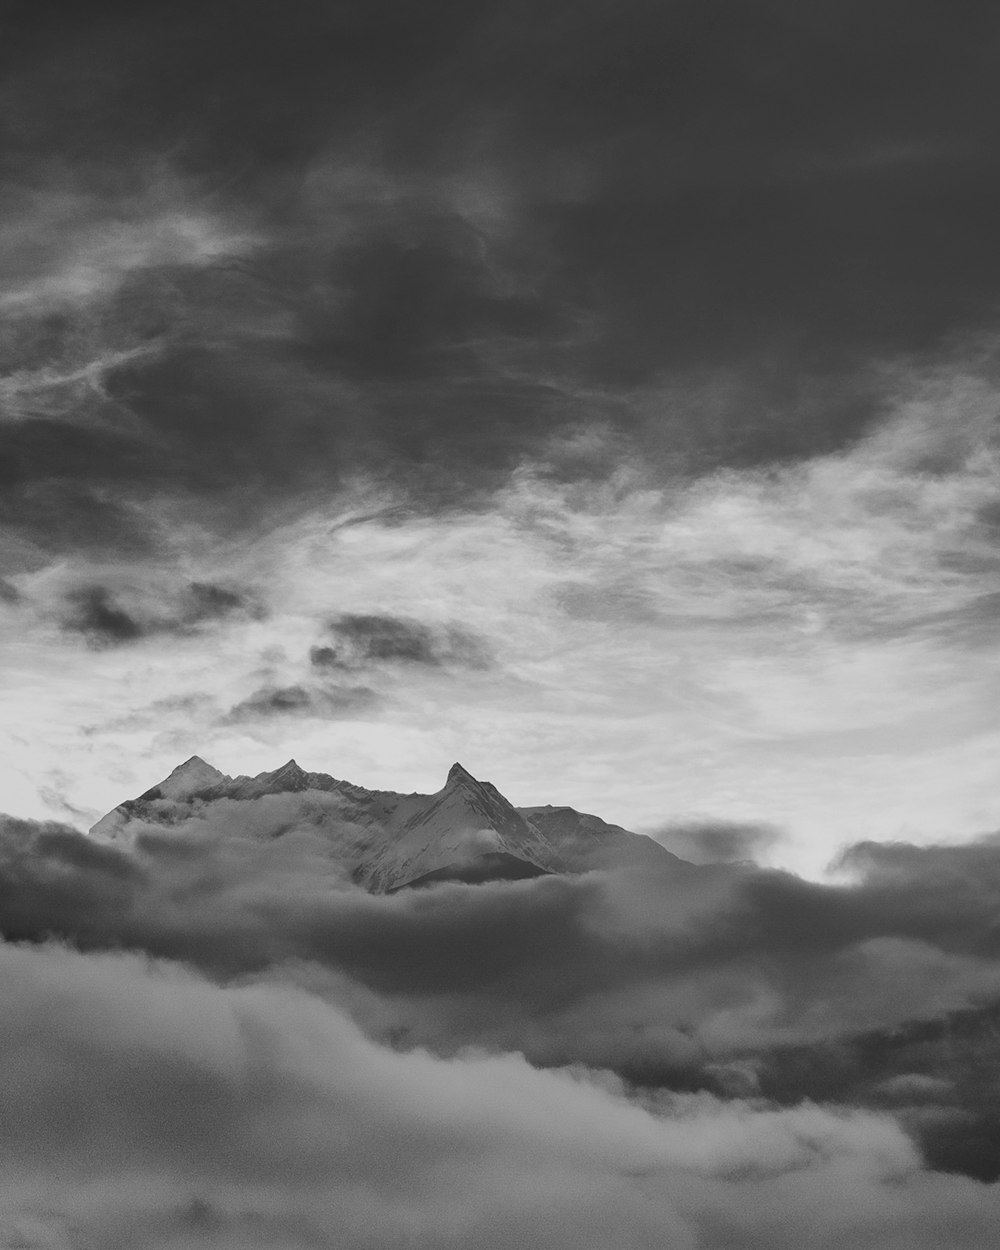 흐린 하늘 아래 산의 그레이스케일 사진